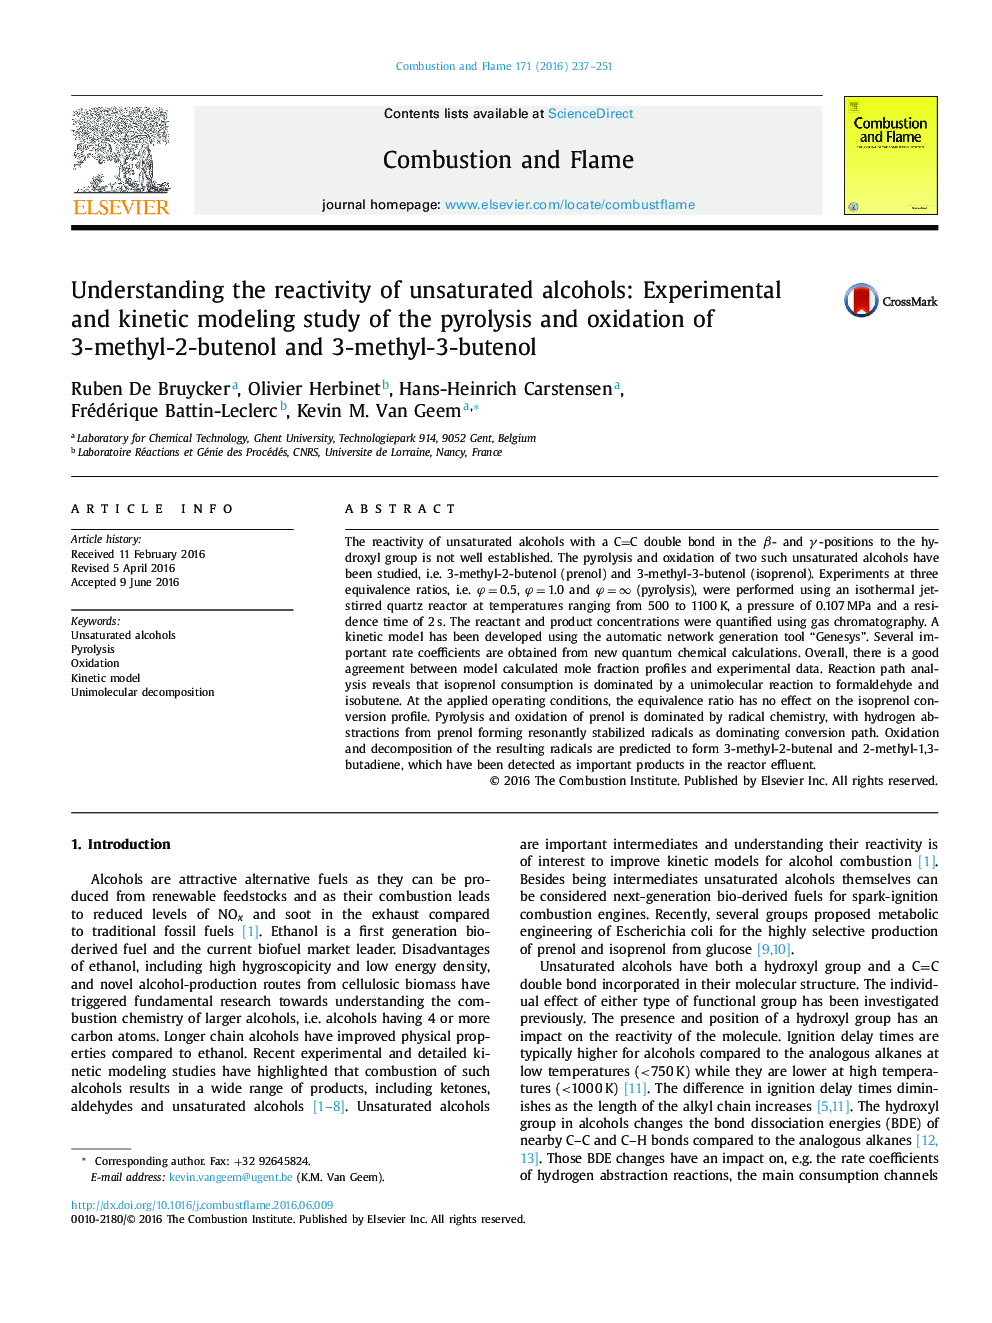 درک واکنش پذیری الکلهای غیر اشباع: مطالعه مدلسازی تجربی و جنبشی پیرولیز و اکسیداسیون 3-متیل-2-بوتنول و 3-متیل-3-بوتنول 